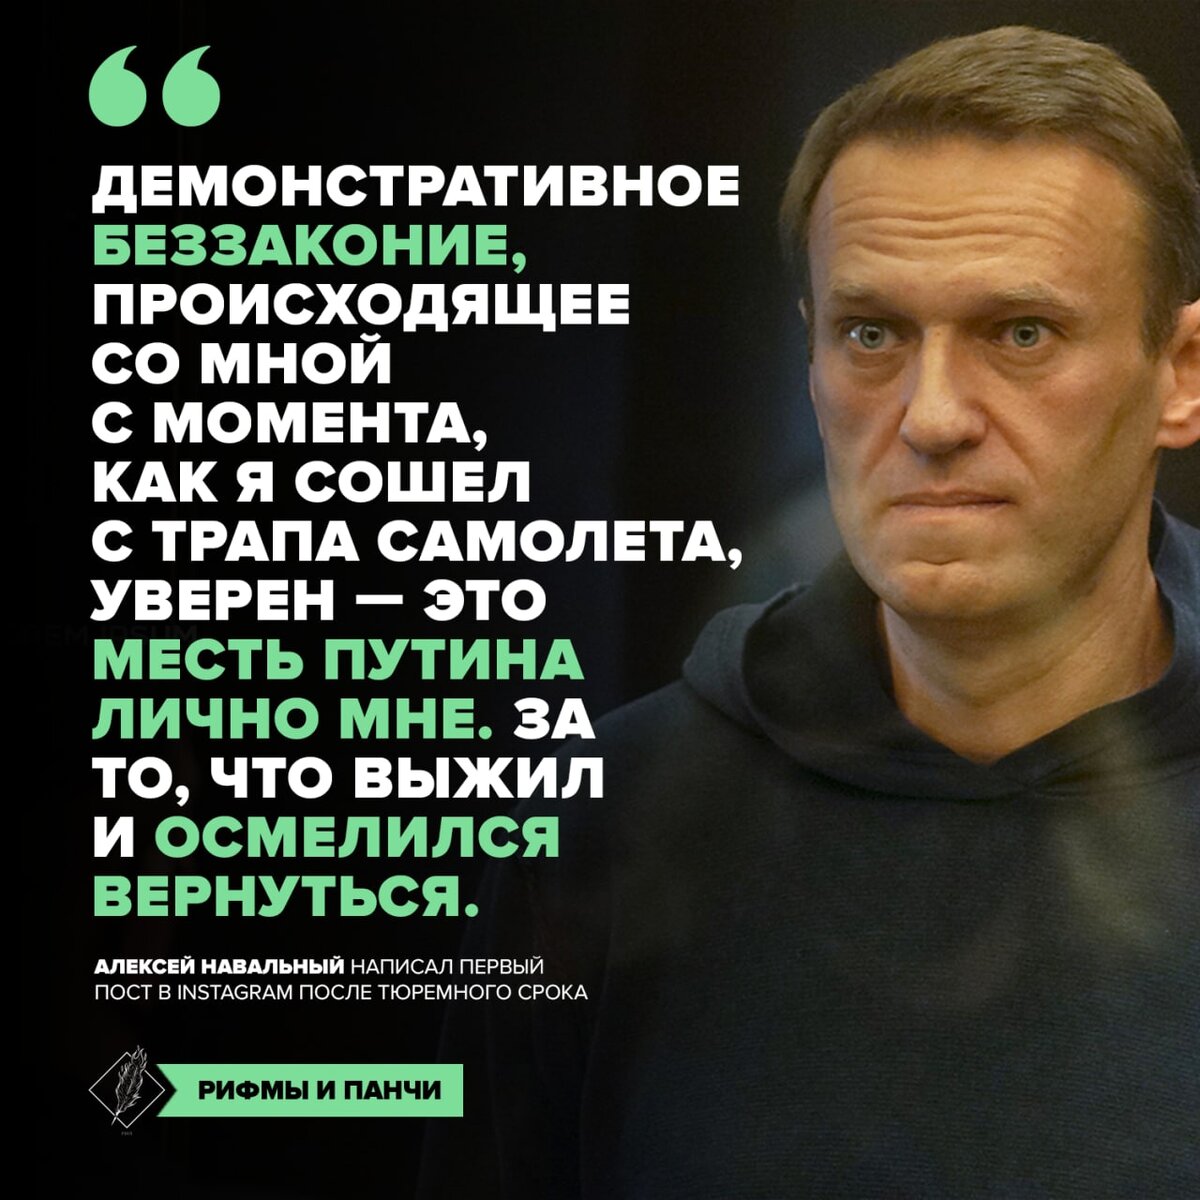 Что хорошего сделал навальный для россии. Что сделал Навальный для России.